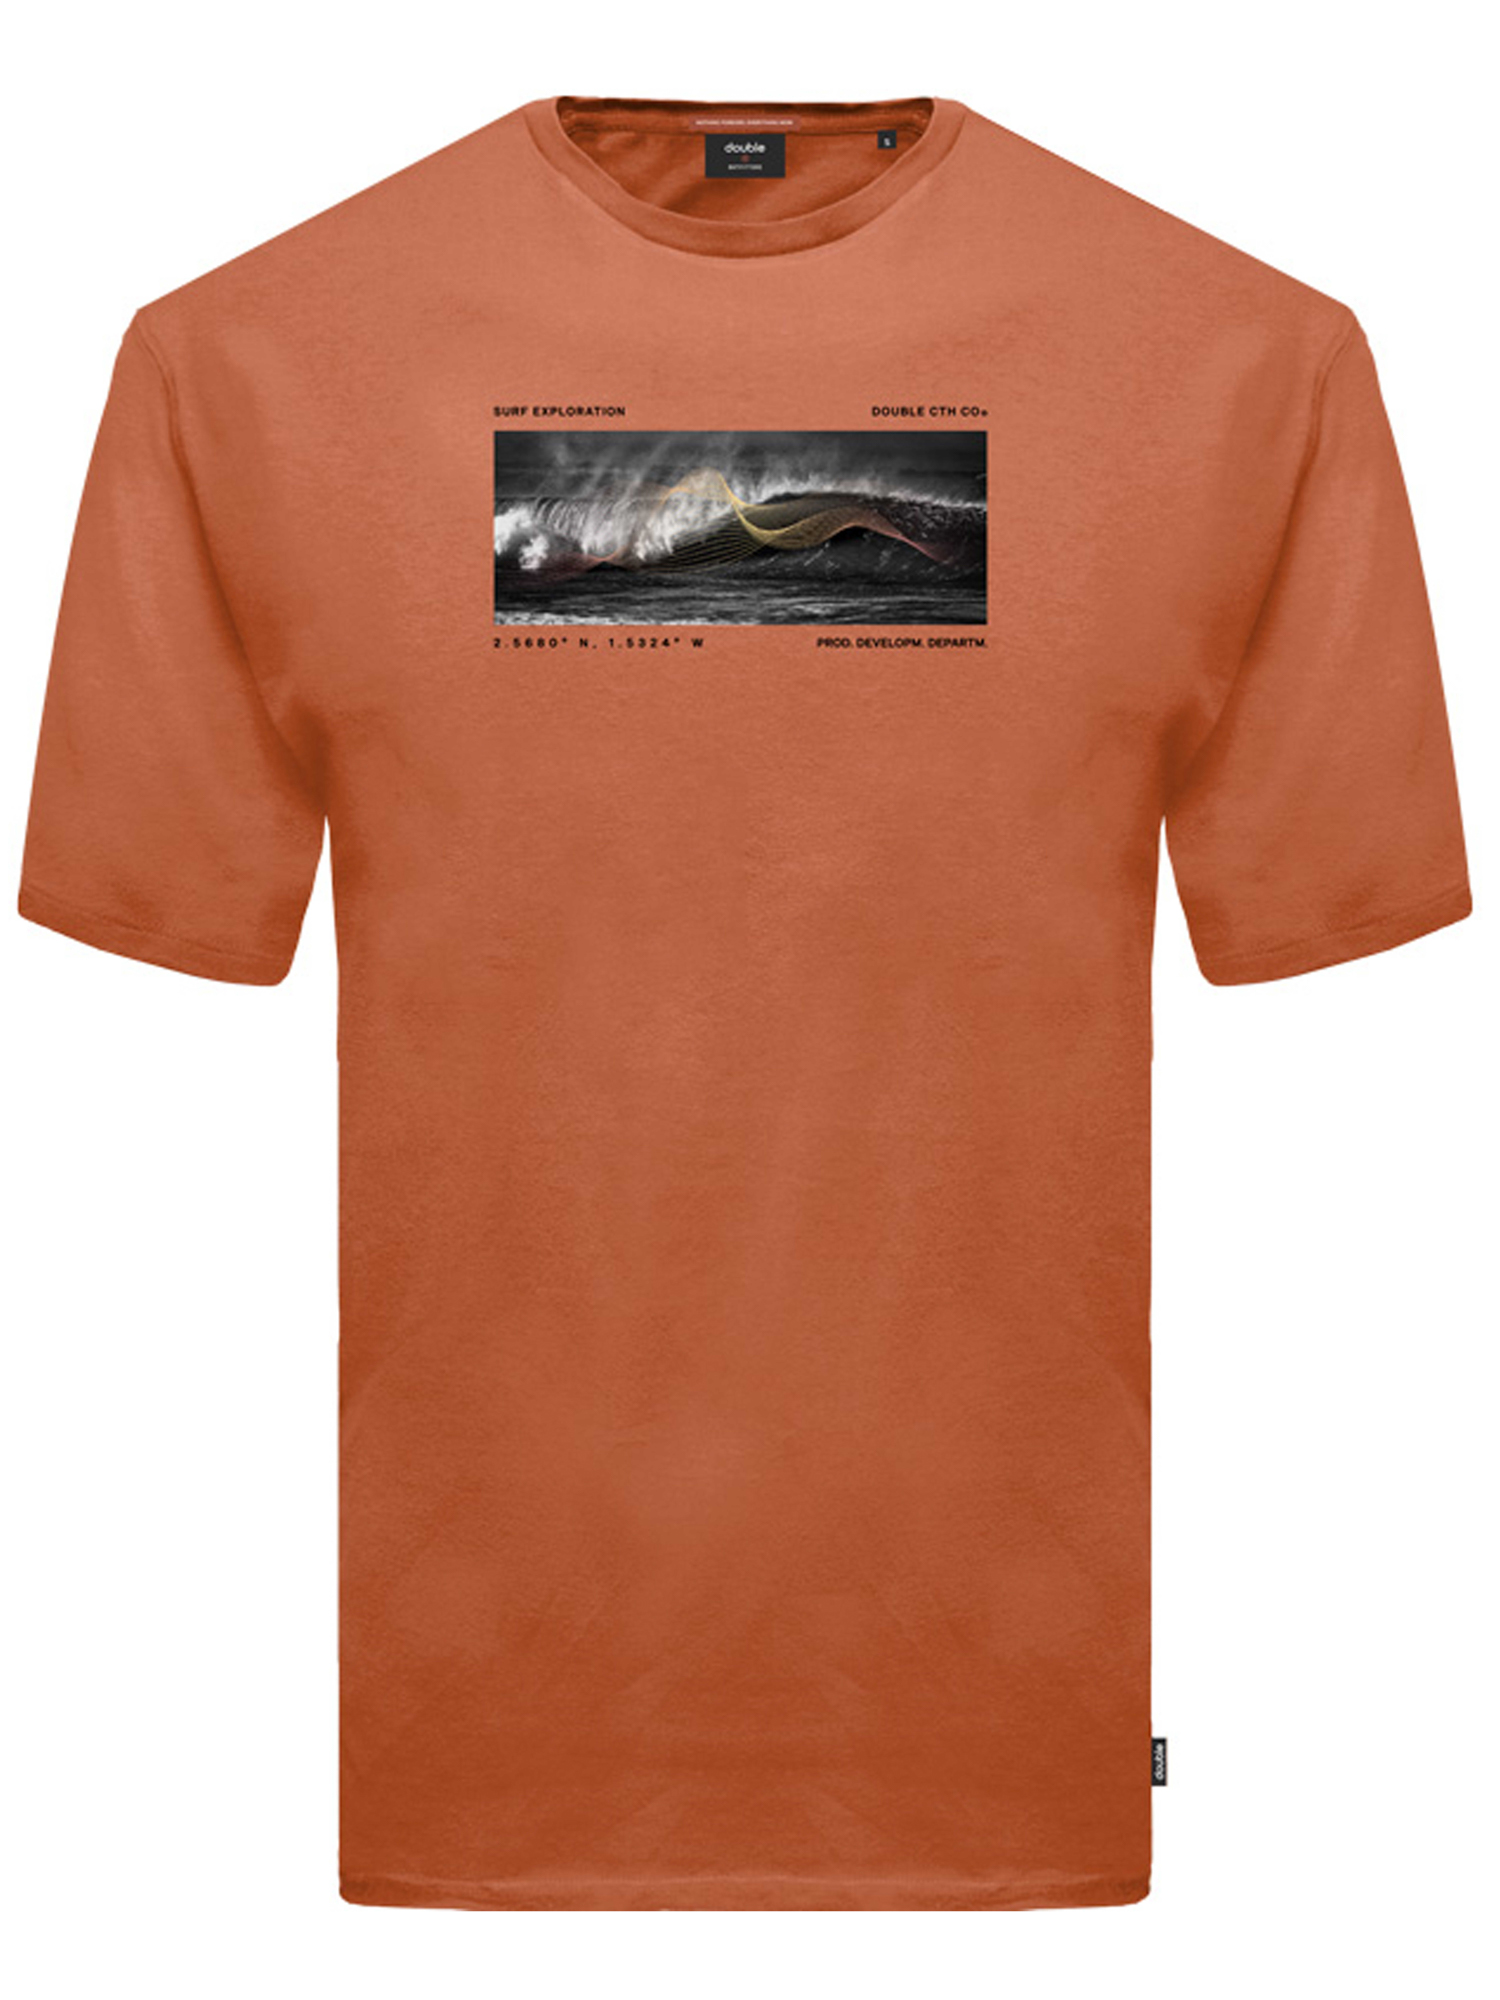 Ανδρική Μπλούζα T-Shirts Μακό Plus Size - Πορτοκαλί